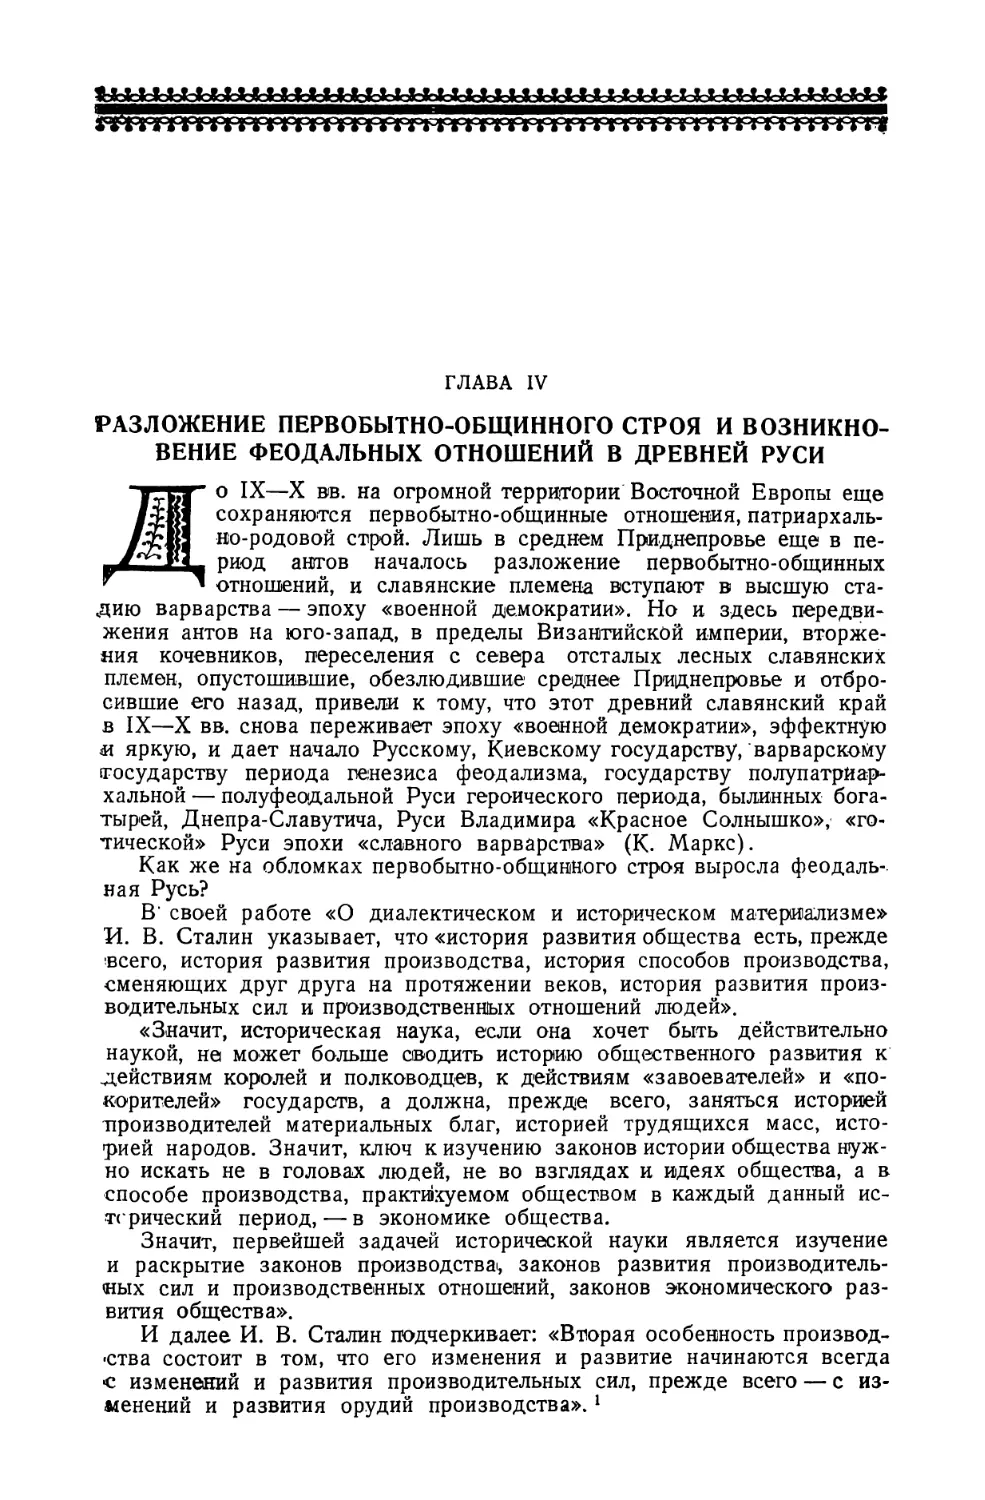 Глава IV. Разложение первобытно-общинного строя и возникновение феодальных отношений в древней Руси